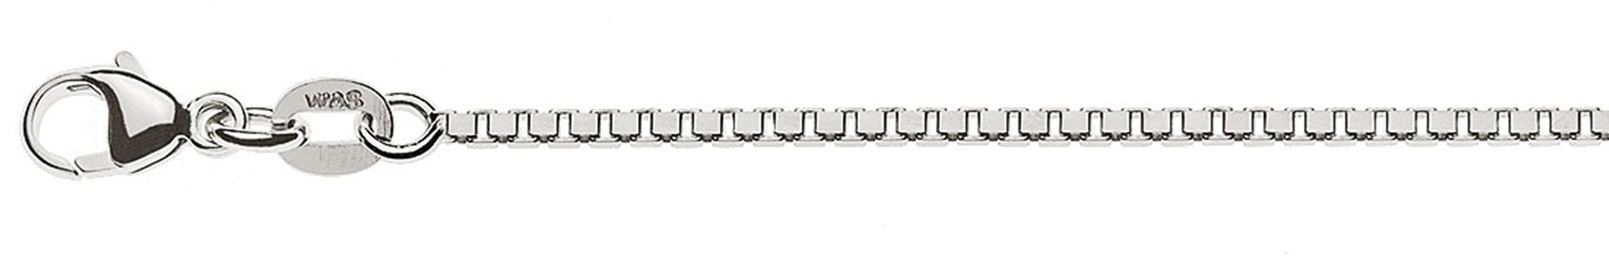 AURONOS Prestige Halskette Weissgold 18K Venezianerkette diamantiert 60cm 1.4mm